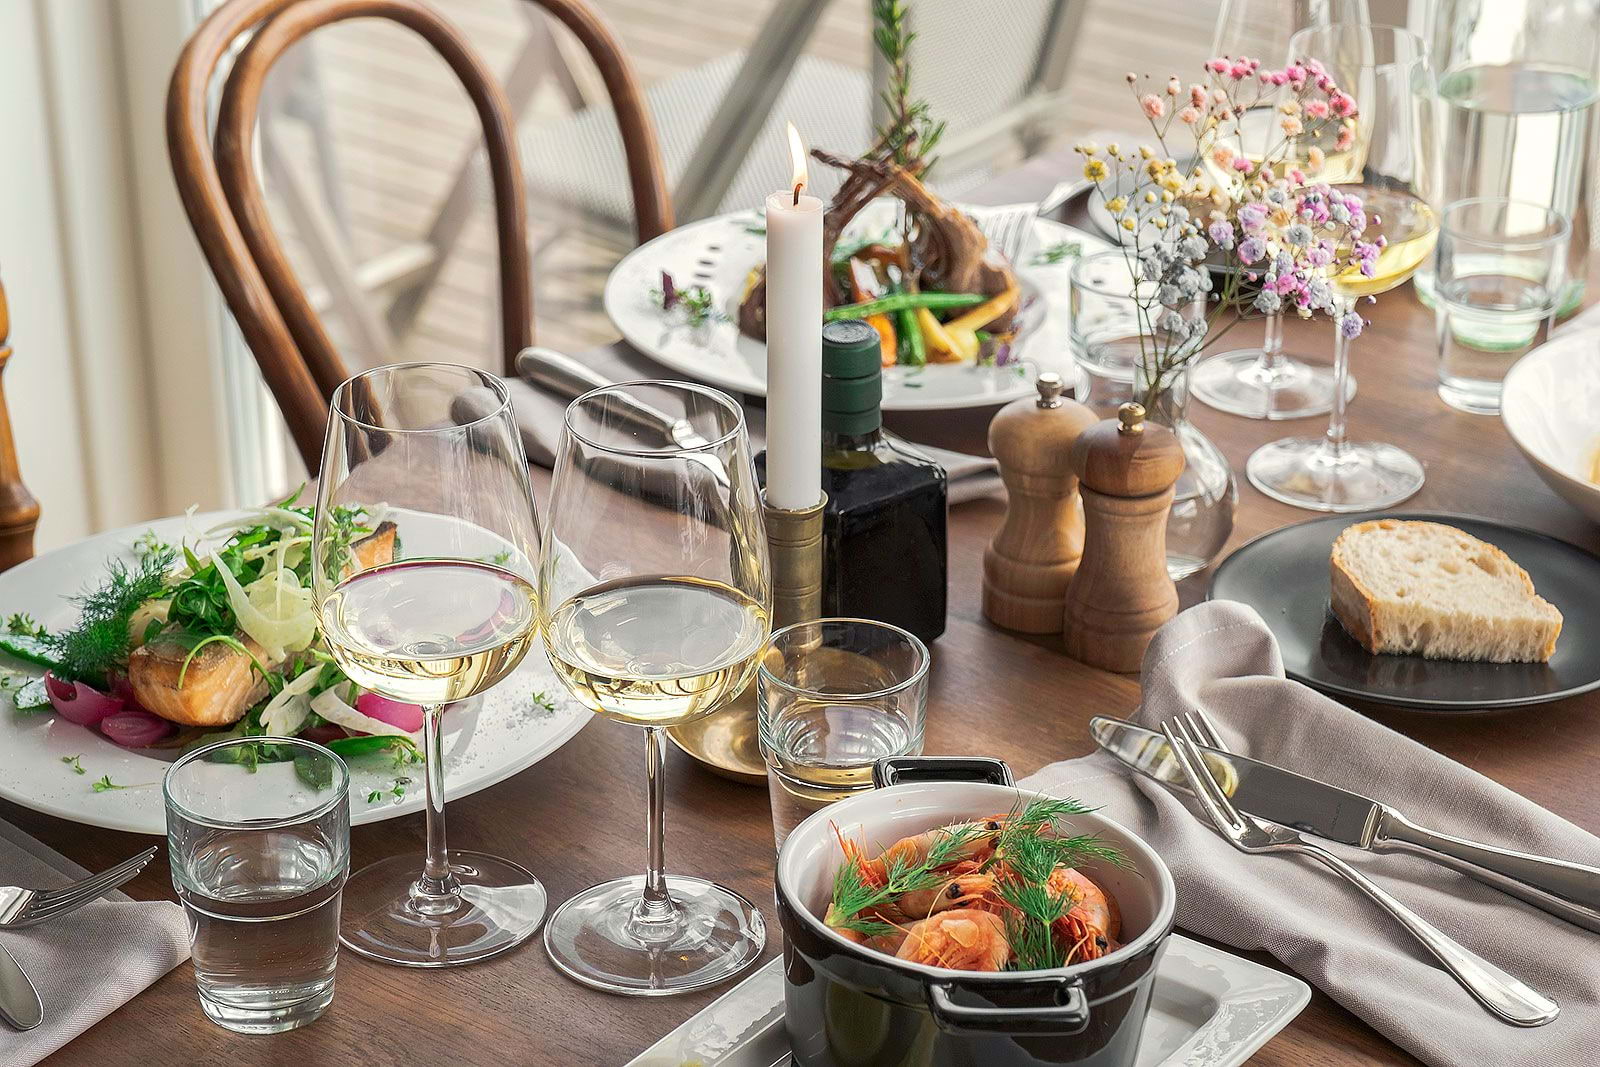 Guide to outdoor restaurants in Covent Garden